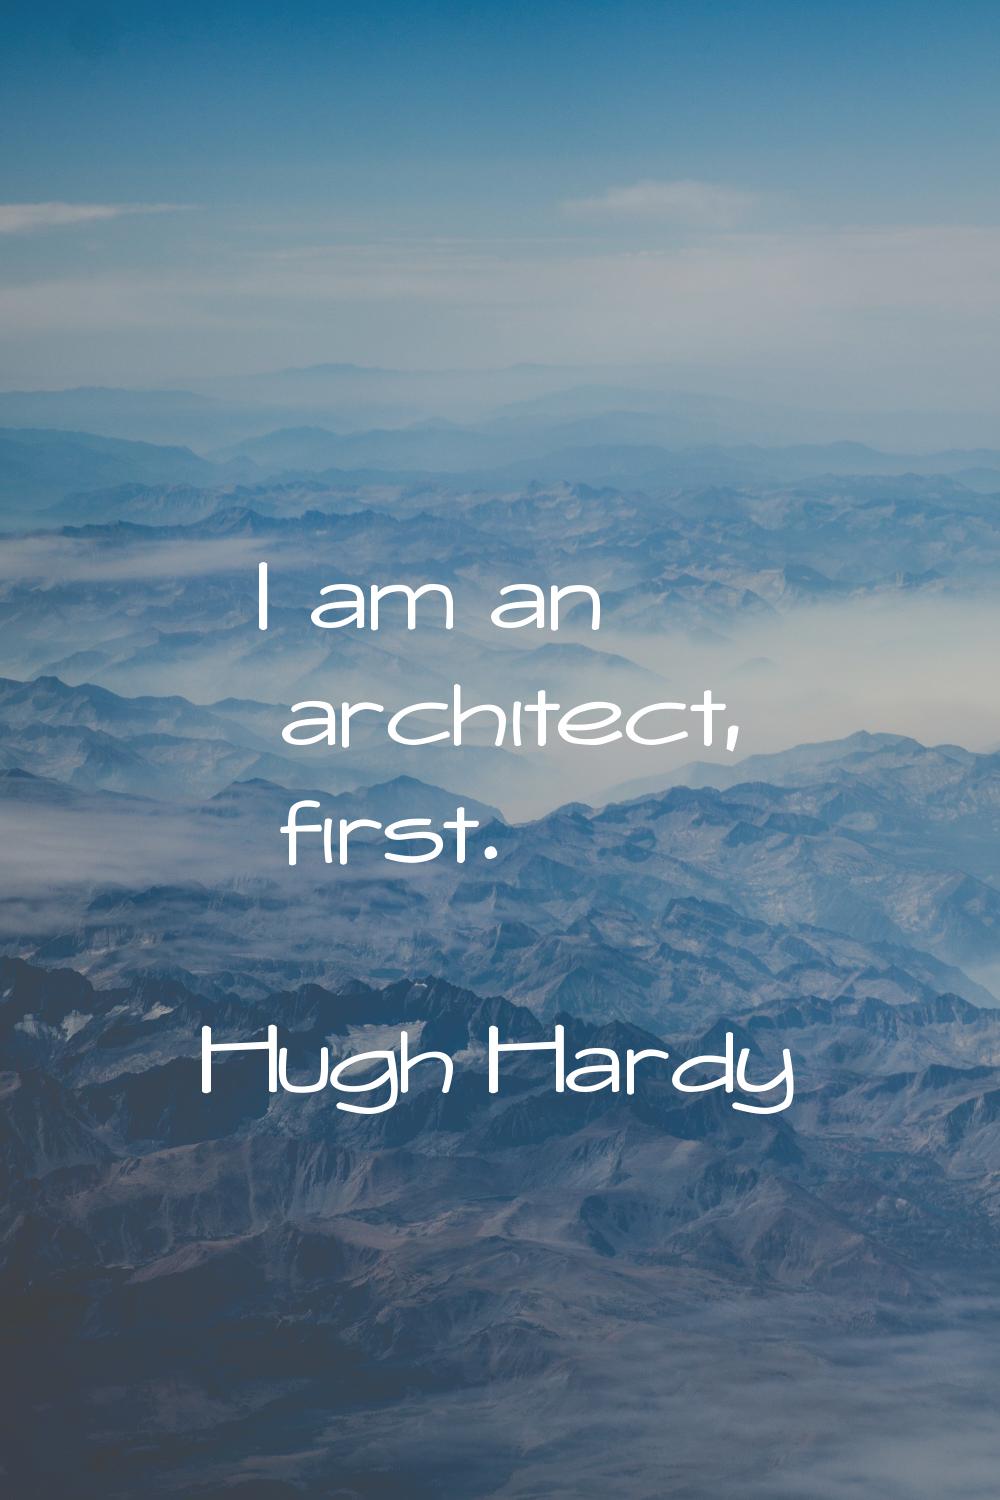 I am an architect, first.